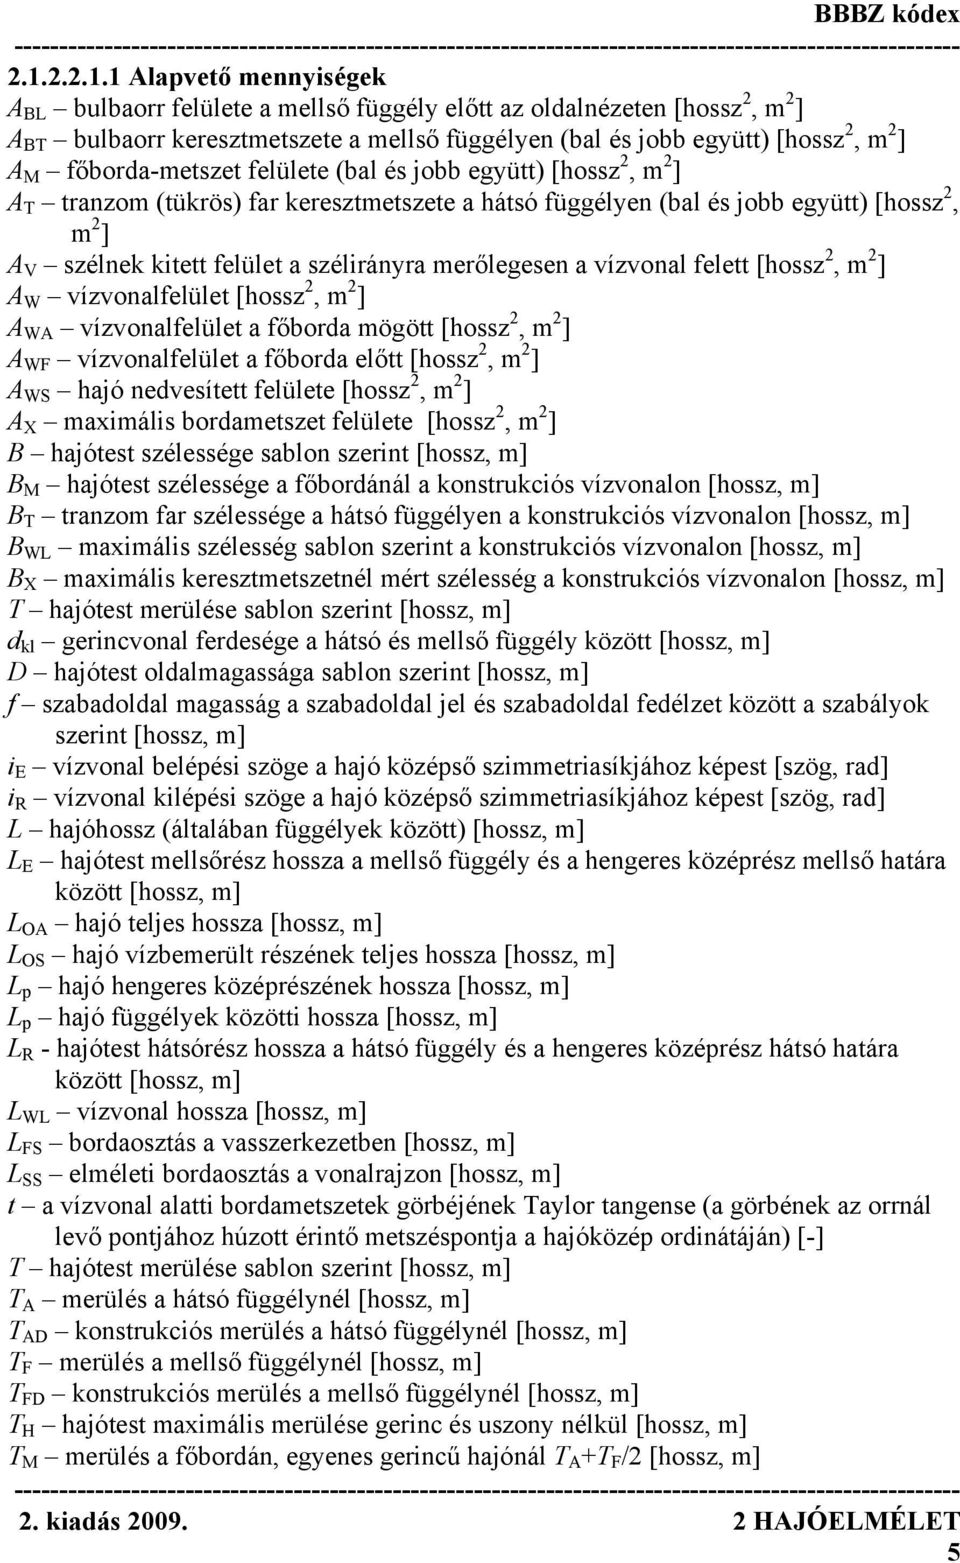 BBBZ kódex Hajóelmélet - PDF Ingyenes letöltés